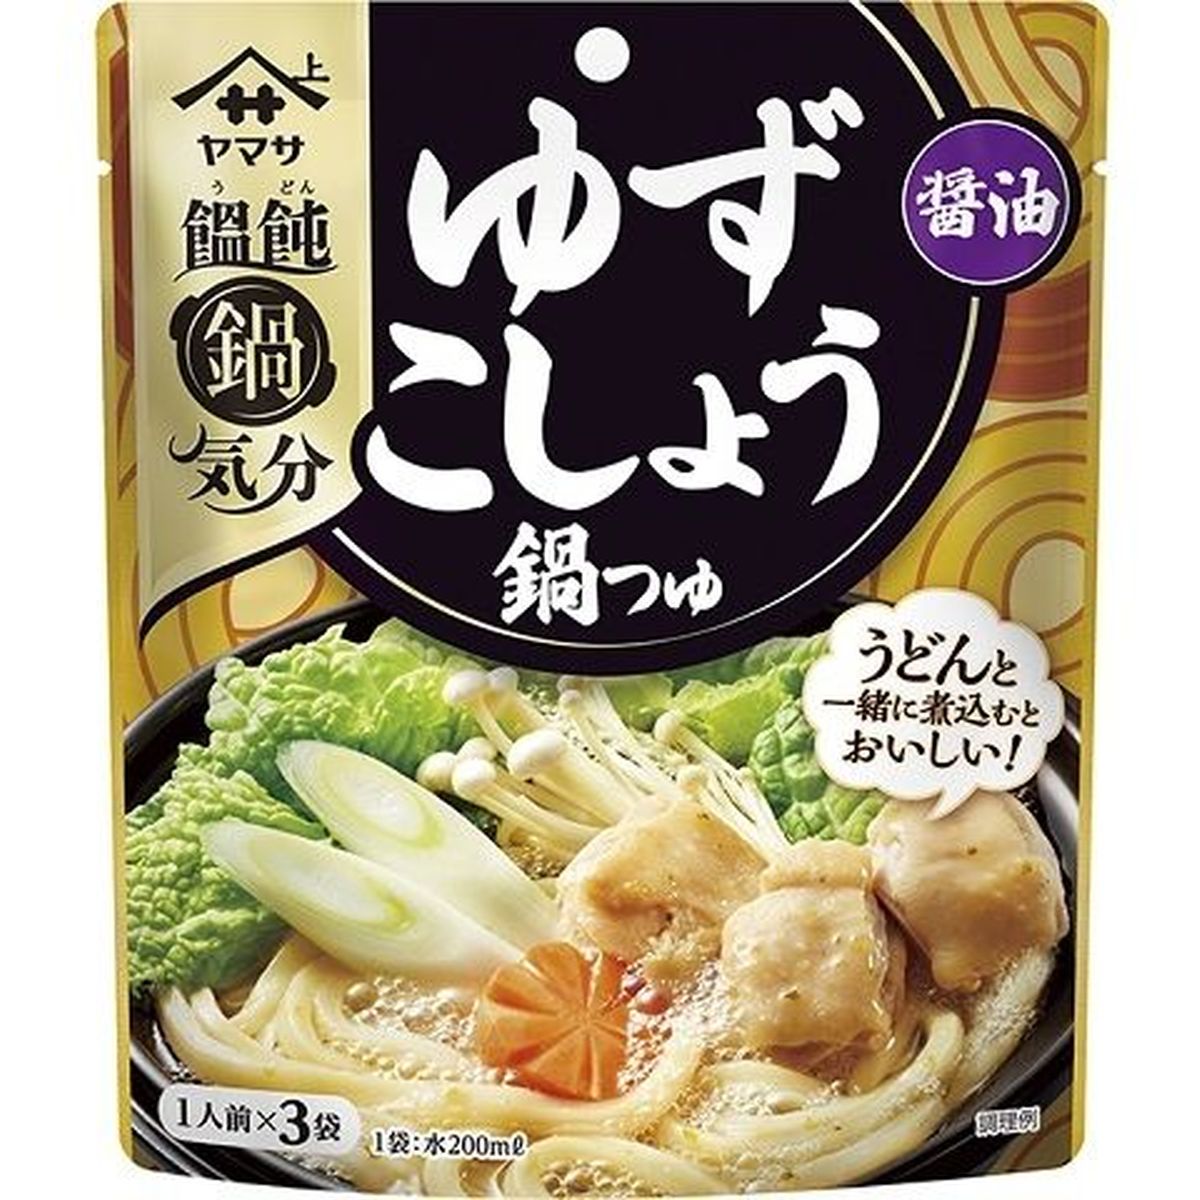 【24個入リ】ヤマサ饂飩鍋気分ユズコショウ鍋汁醤油3食 138g